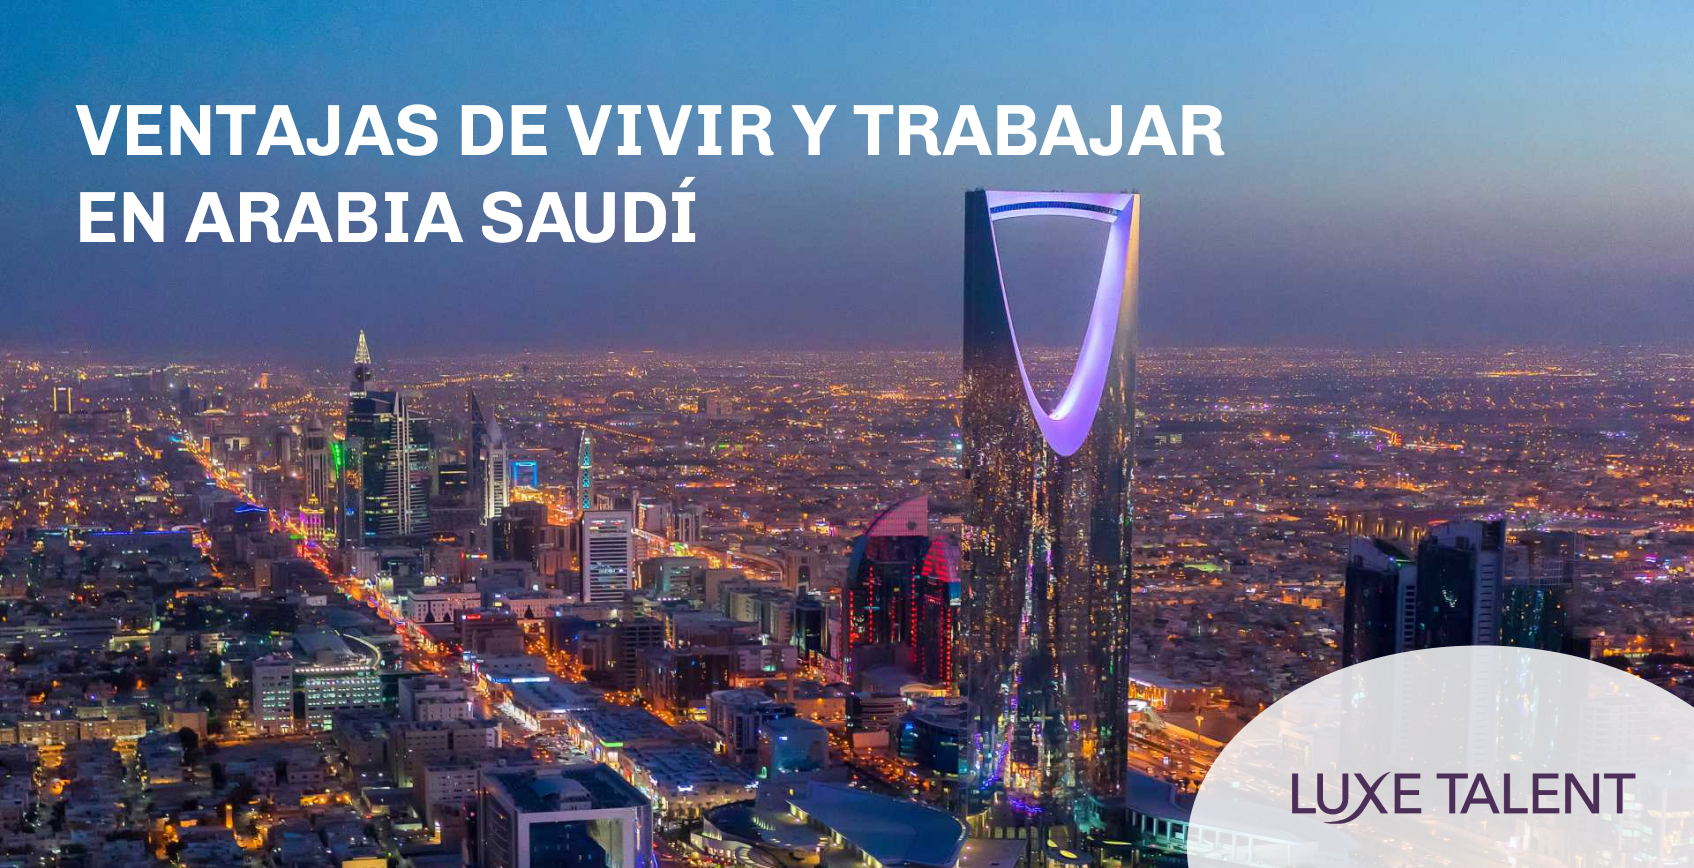 Ventajas de vivir y trabajar en Arabia Saudí | Blog | Luxe Talent